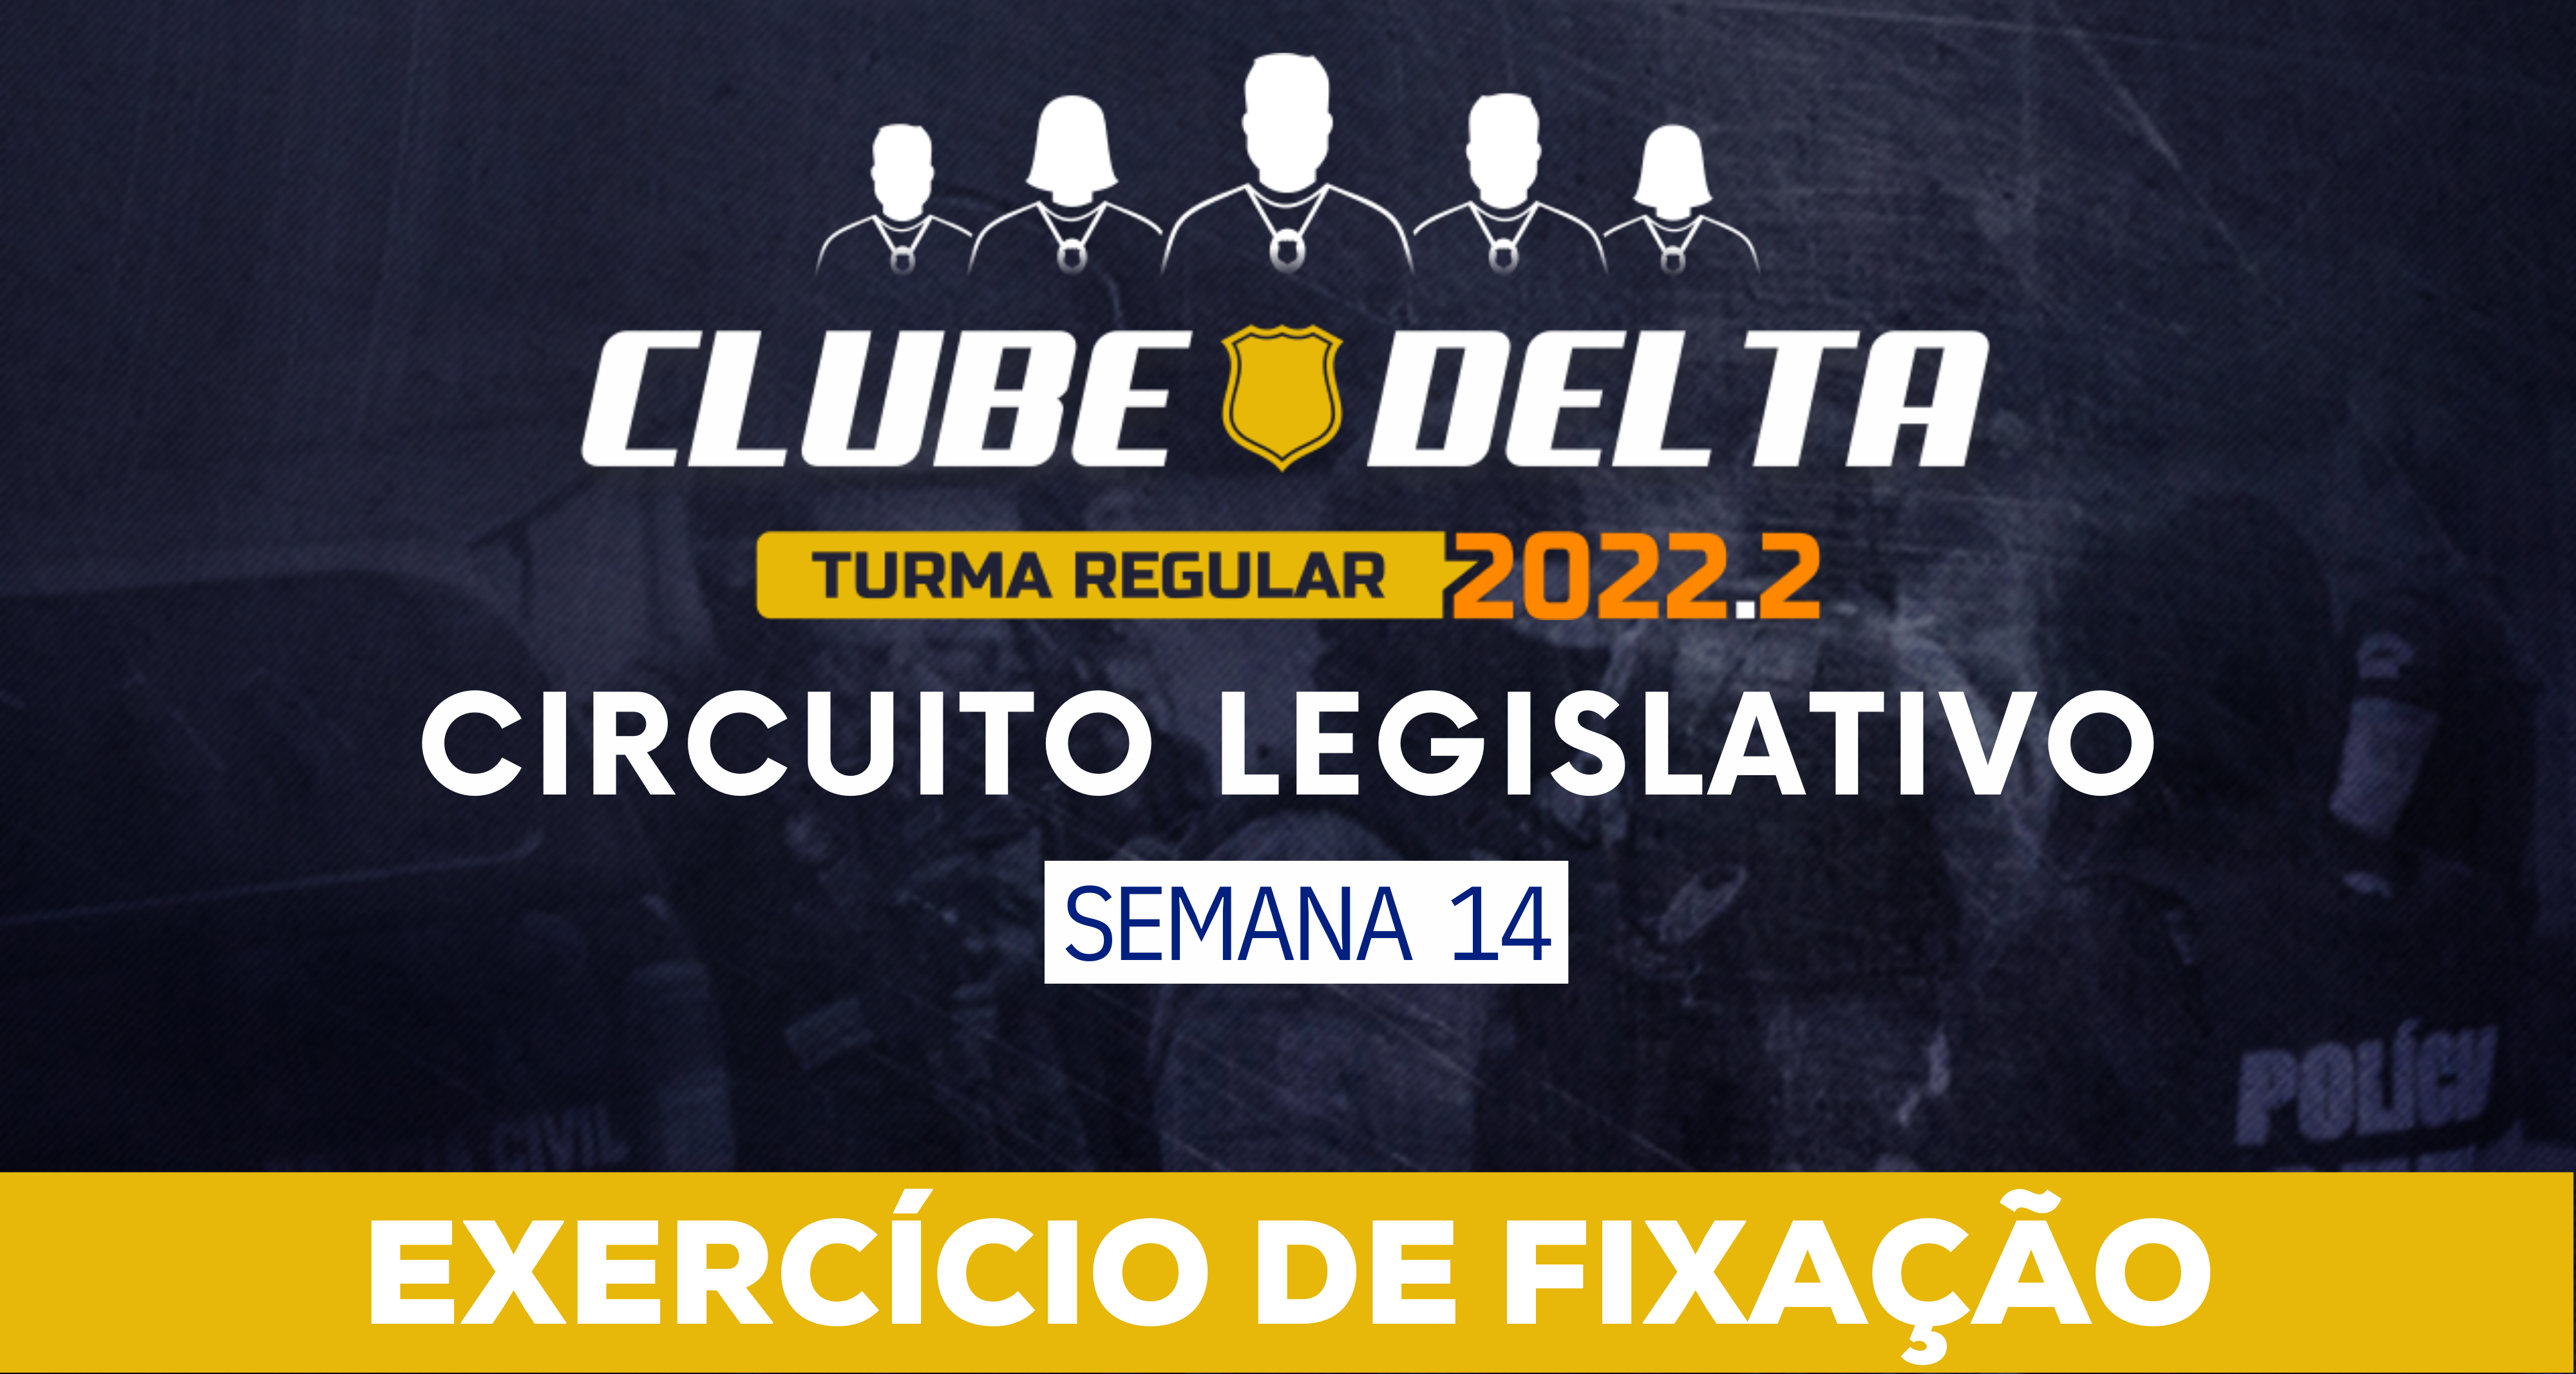 Circuito Legislativo 2022.2 (Clube Delta - Semana 14)